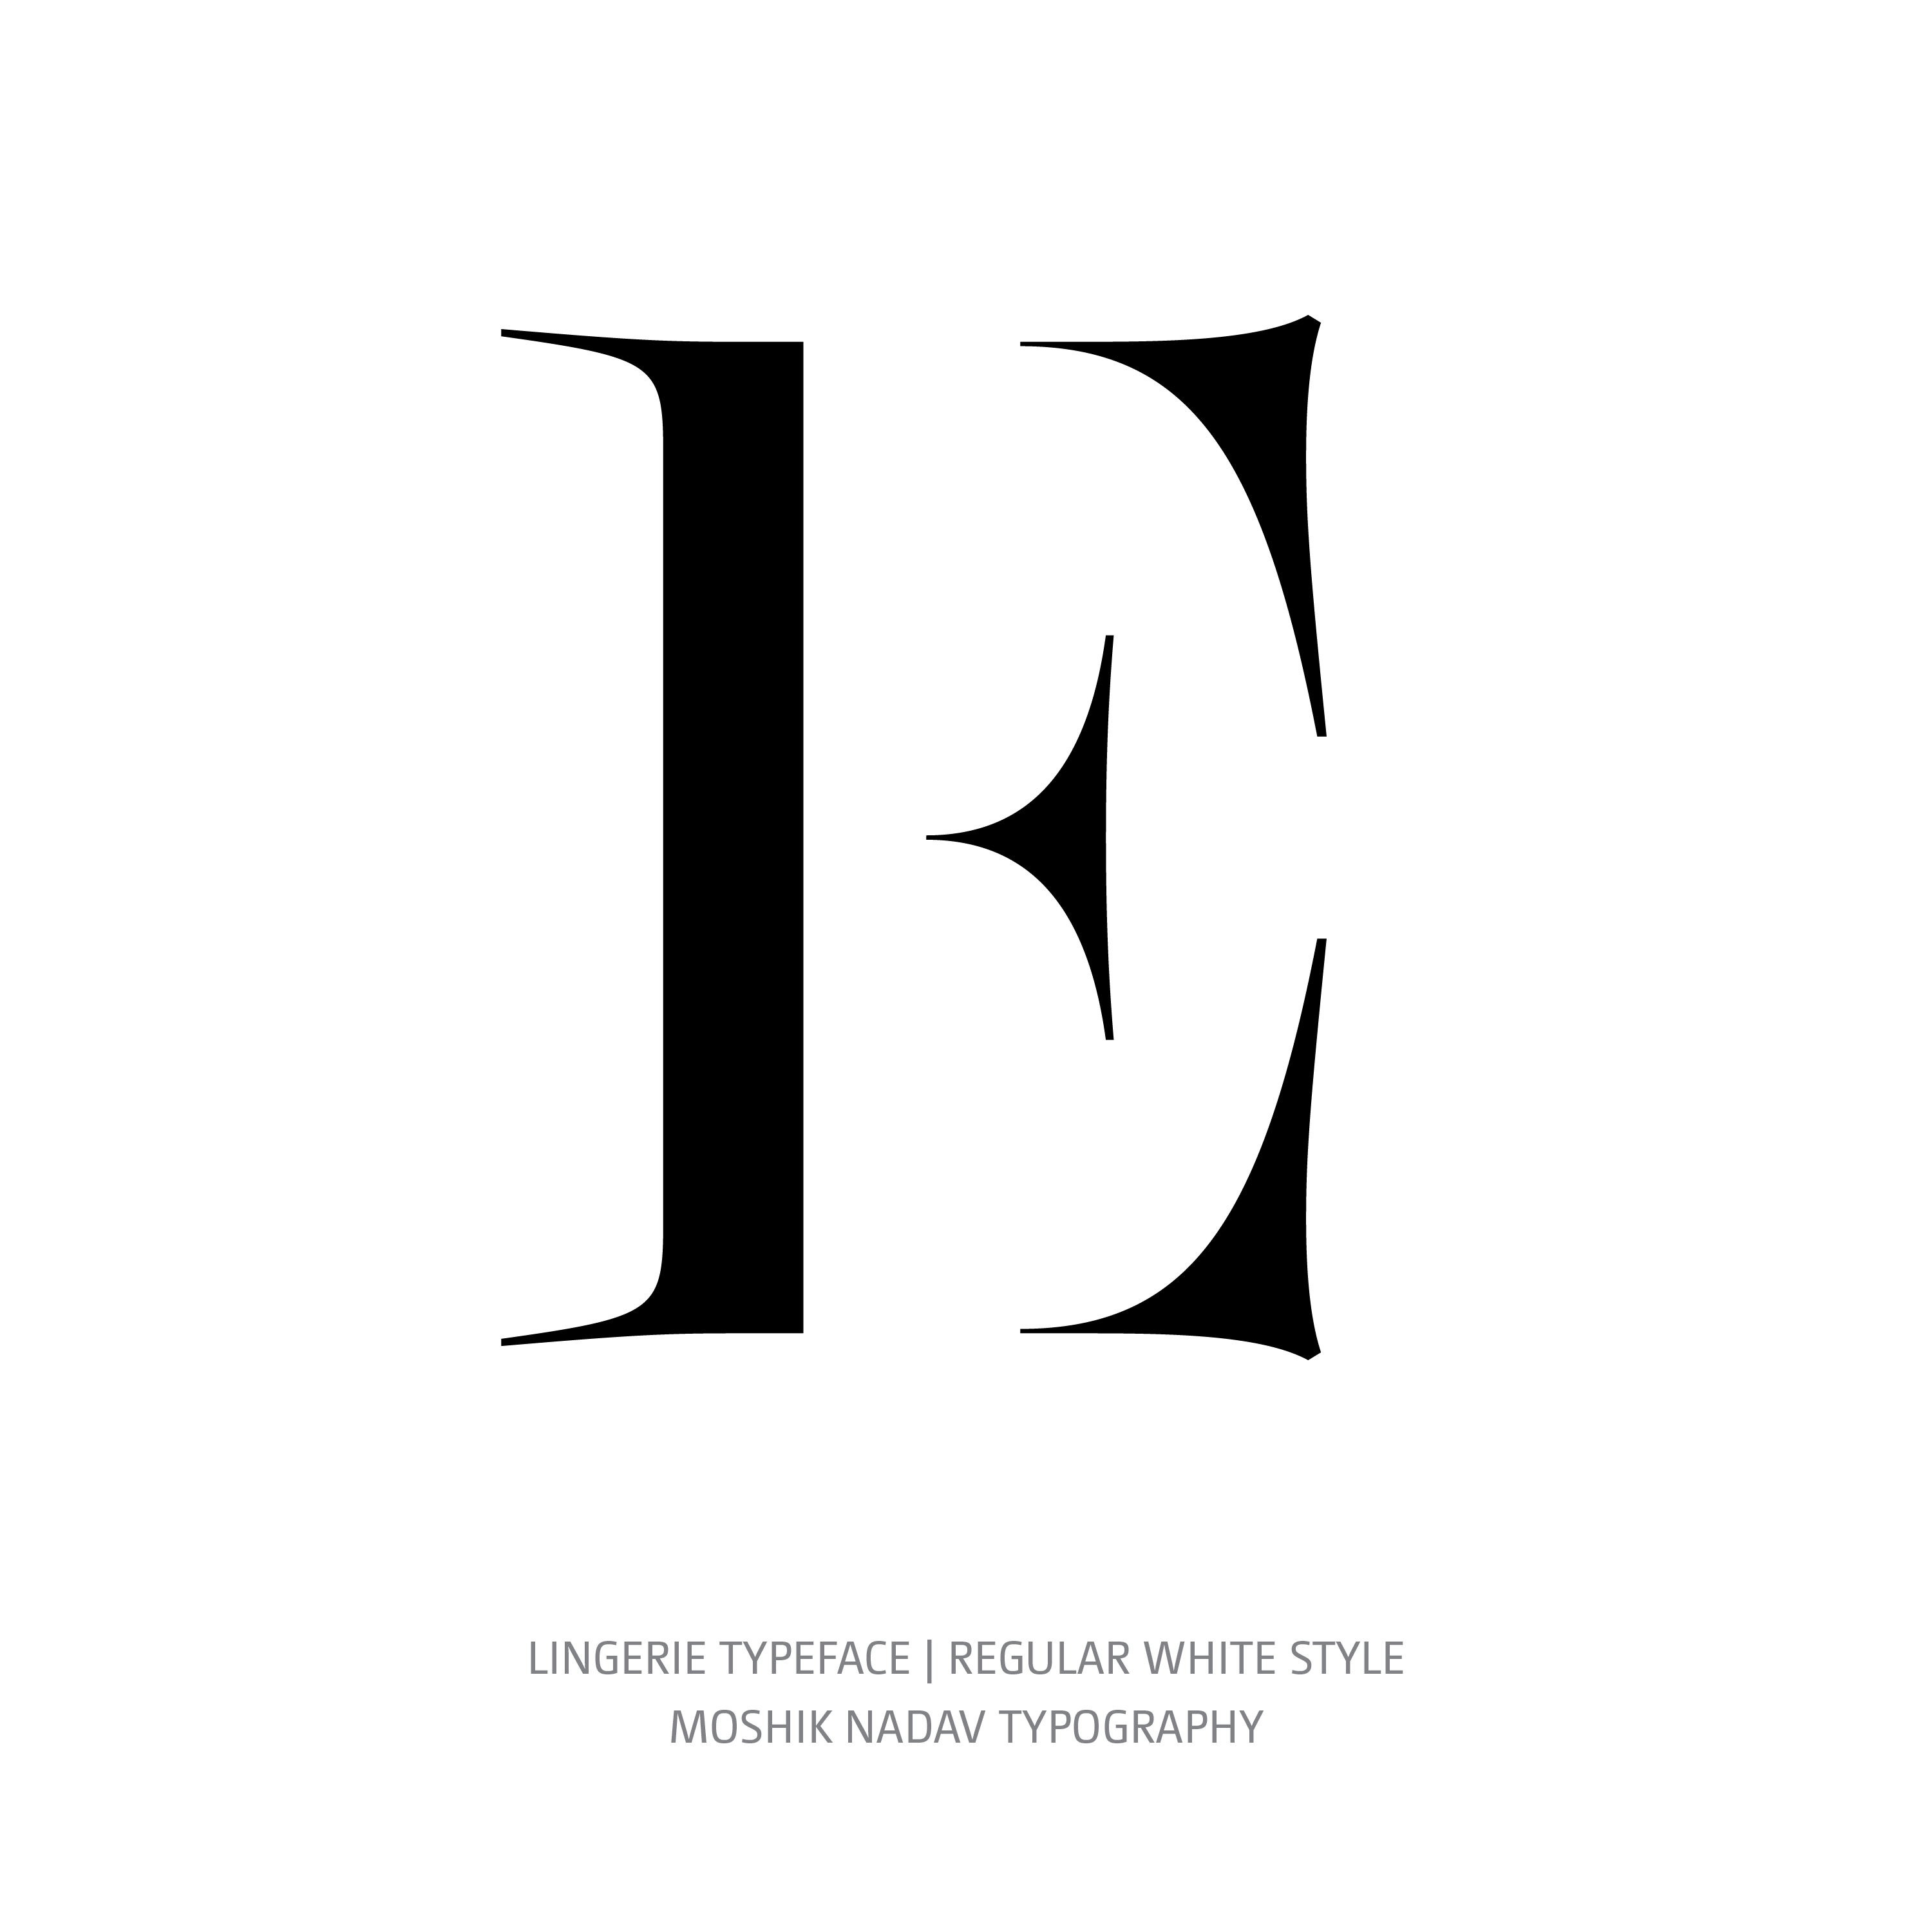 Lingerie Typeface Regular White E